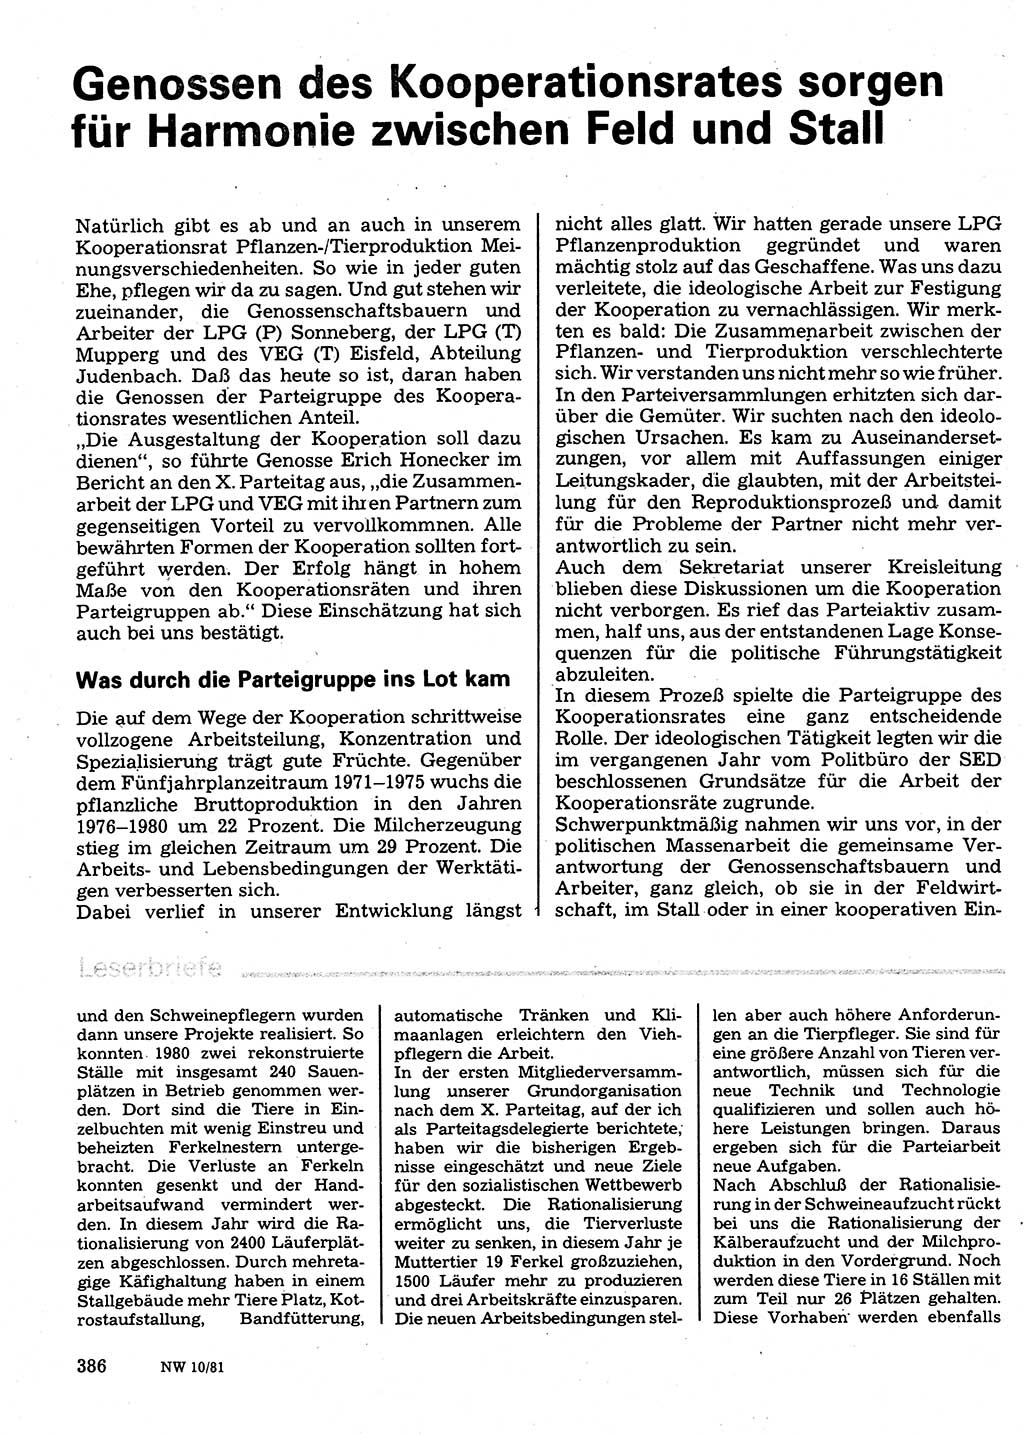 Neuer Weg (NW), Organ des Zentralkomitees (ZK) der SED (Sozialistische Einheitspartei Deutschlands) für Fragen des Parteilebens, 36. Jahrgang [Deutsche Demokratische Republik (DDR)] 1981, Seite 386 (NW ZK SED DDR 1981, S. 386)